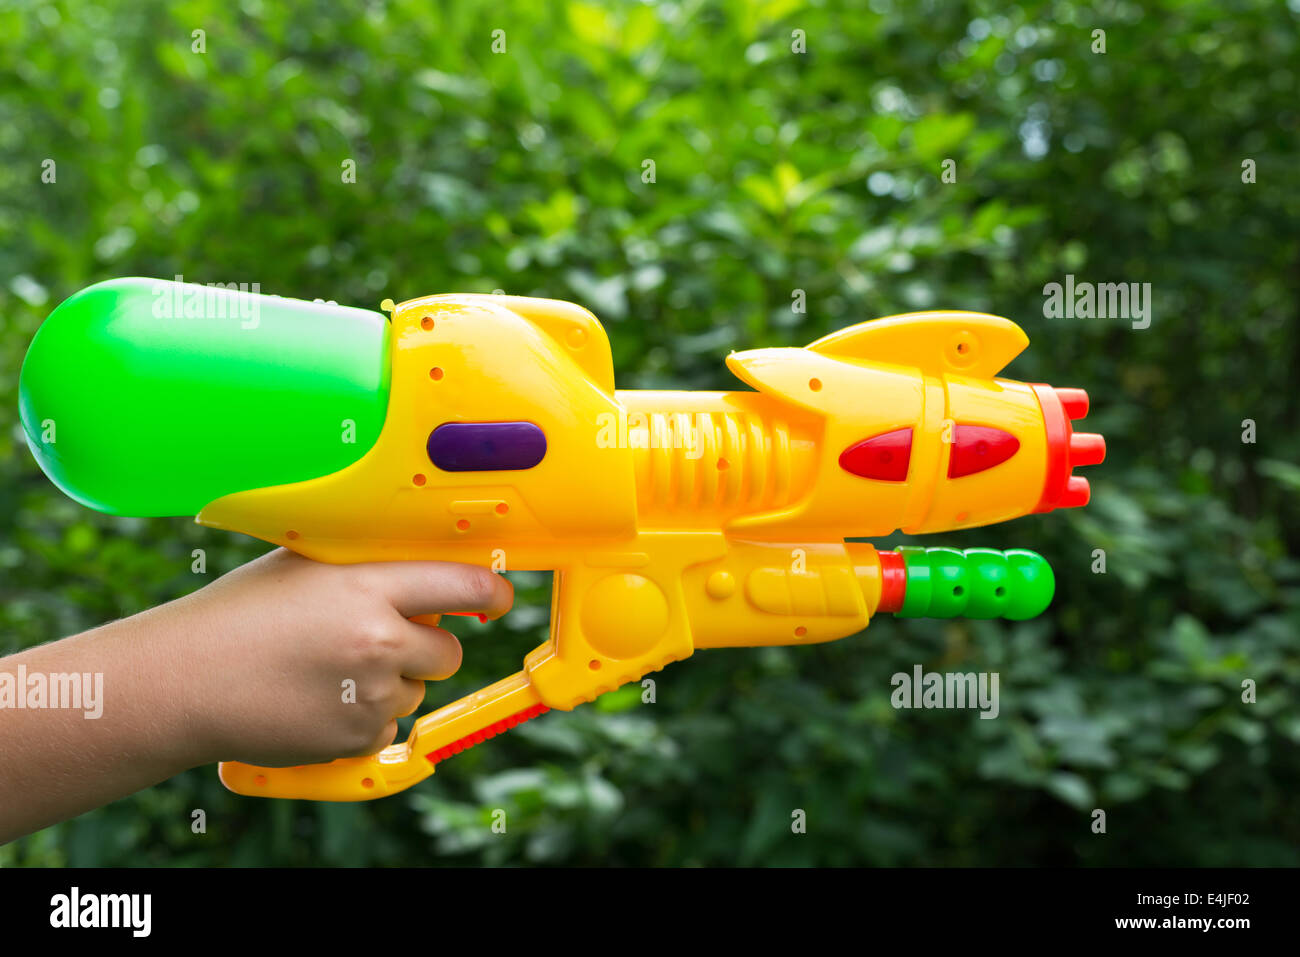 Children water gun in a children's hand Stock Photo